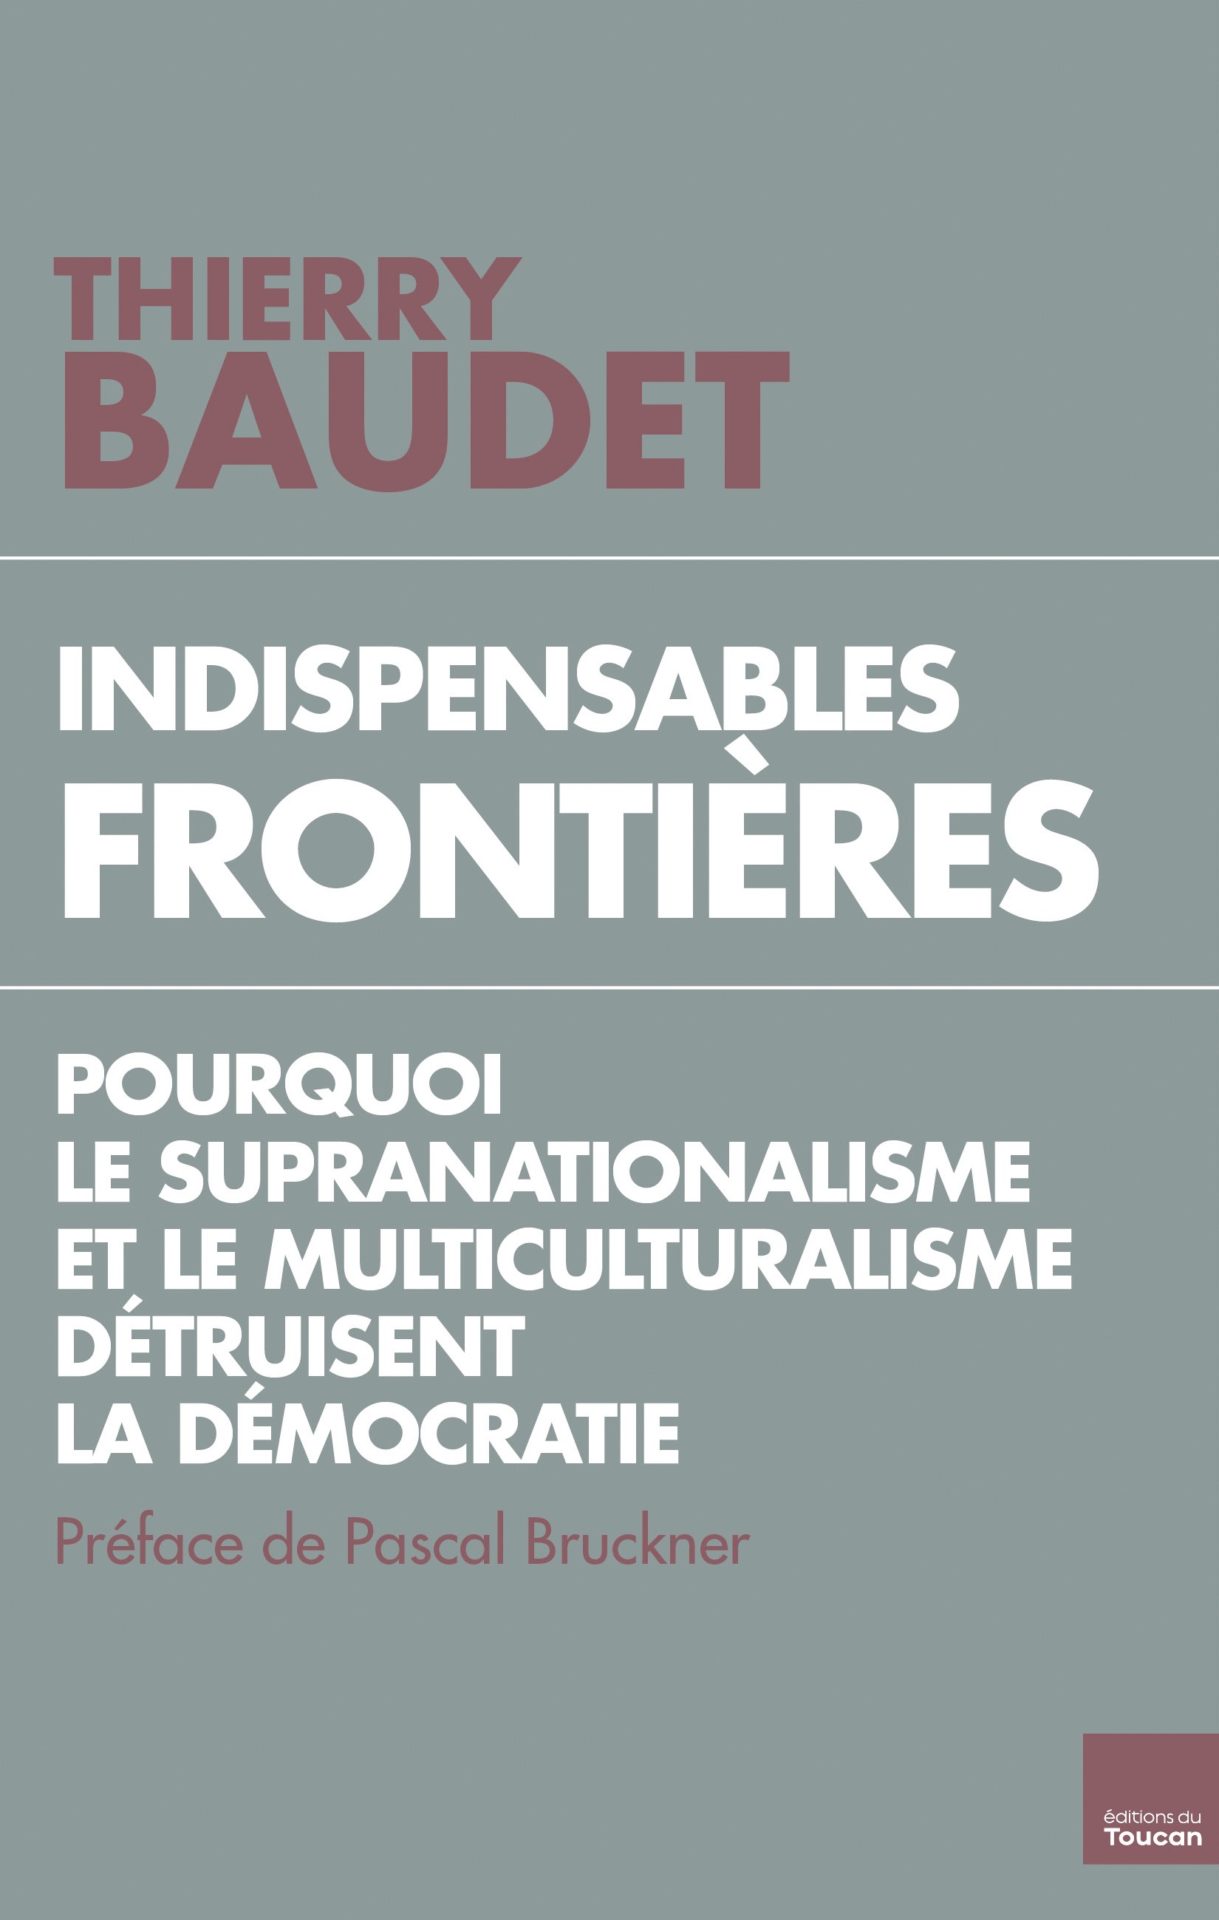 Livre de Thierry Baudet : "Indispensables frontières".